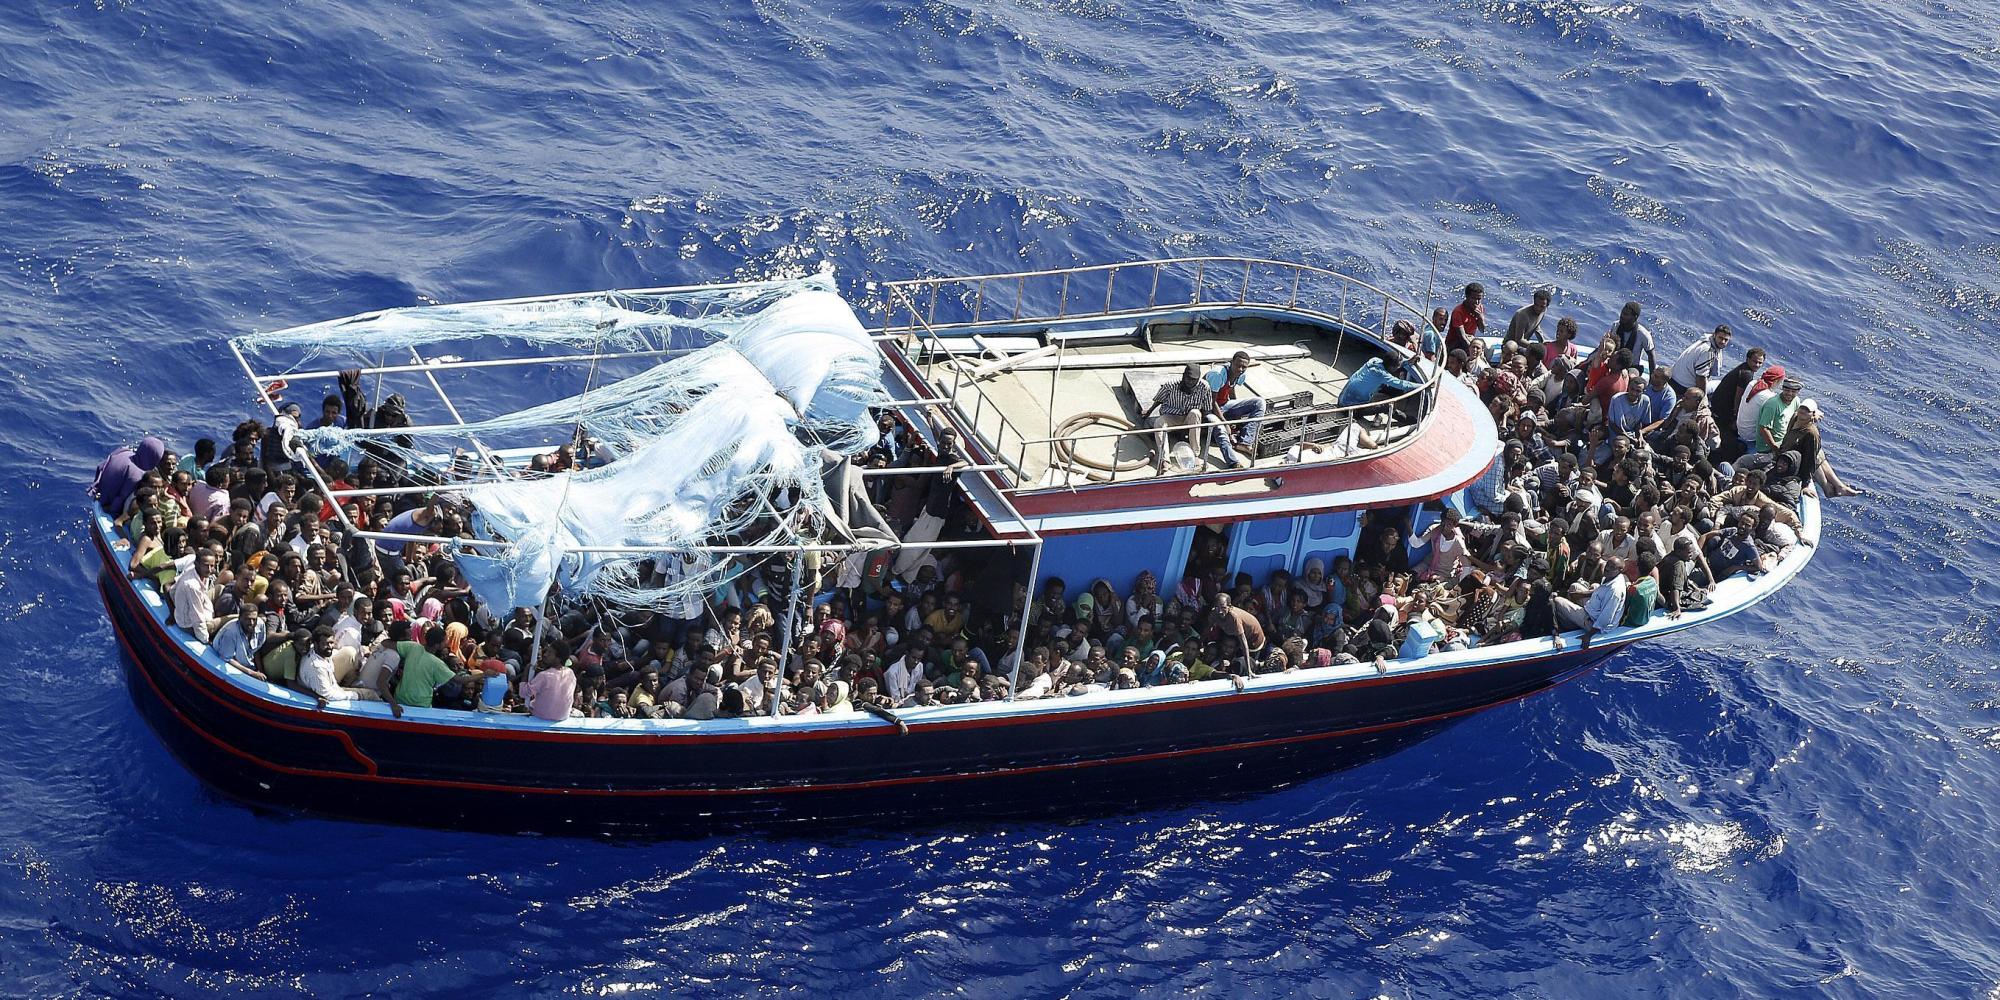 Libia, Frontex lancia l'allarme: "Invasione migranti, bisogna prepararsi"